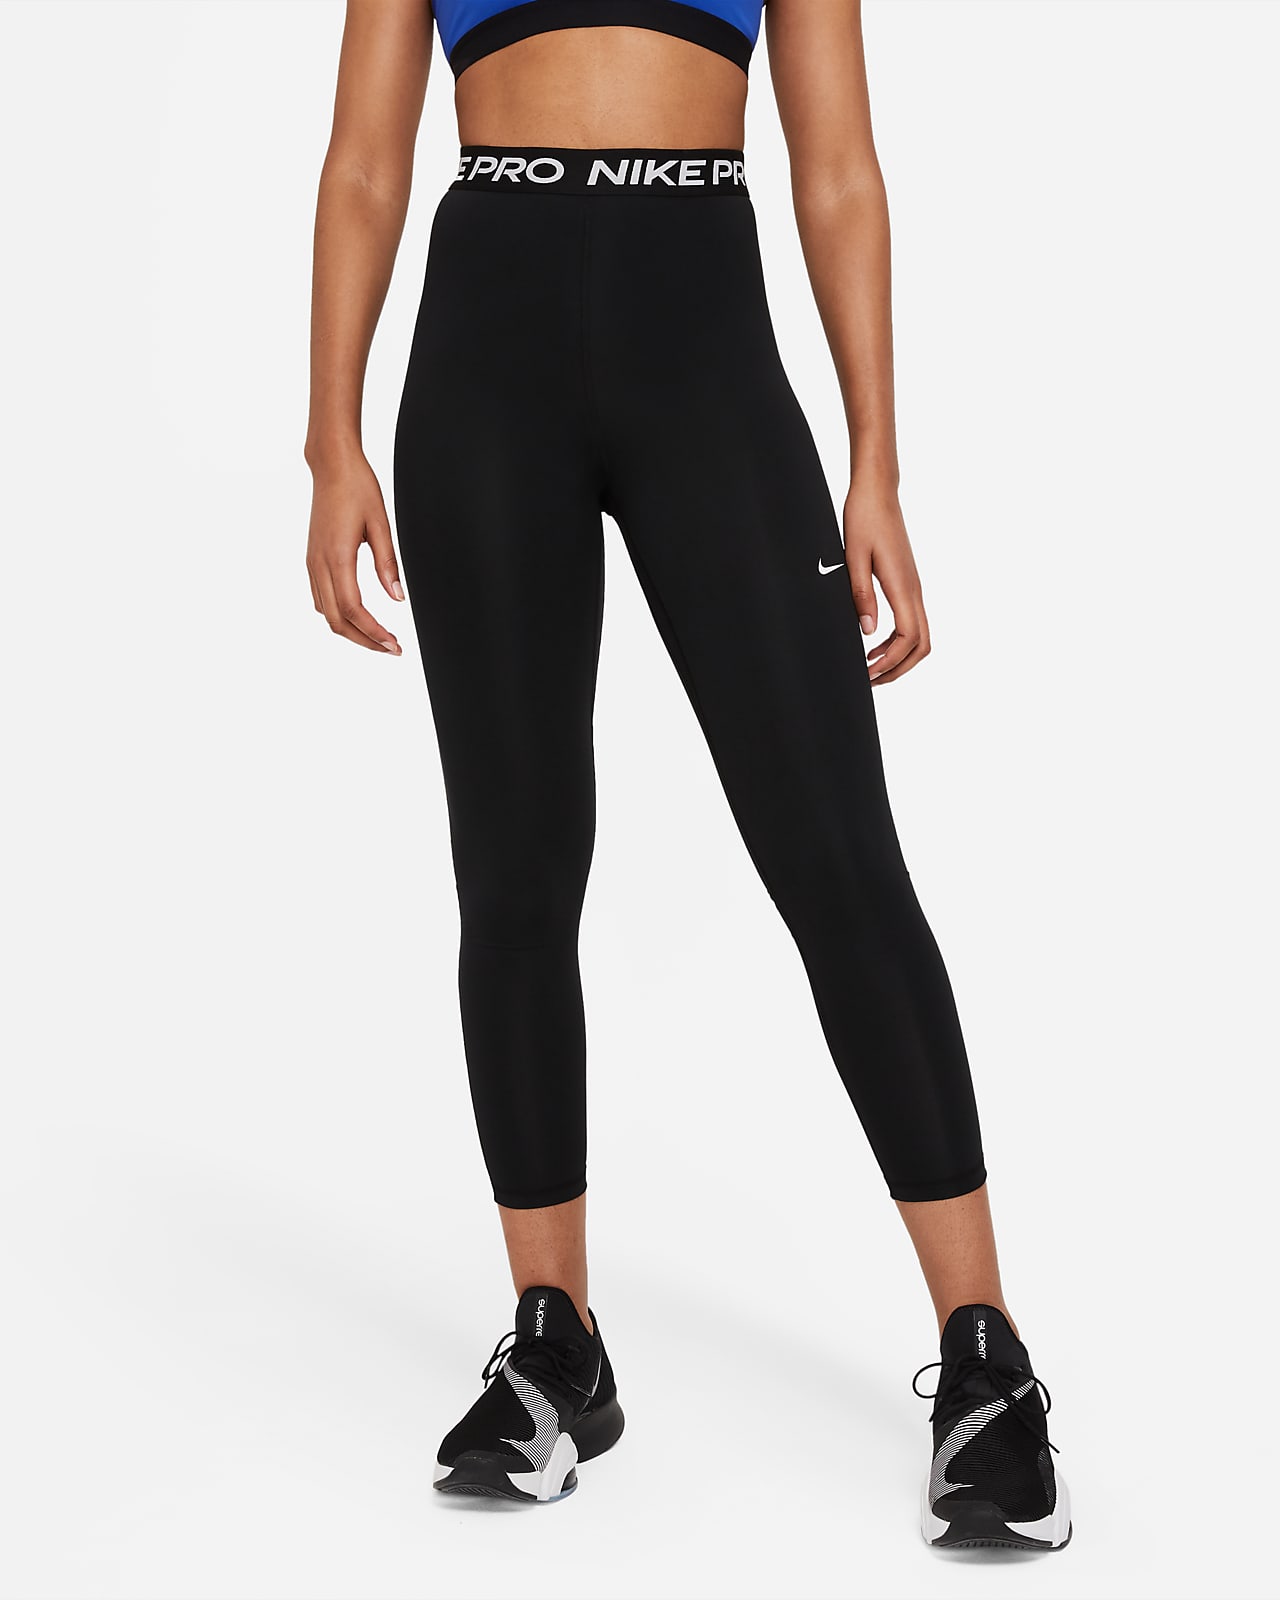 Legging 7/8 taille haute à empiècements en mesh Nike Pro 365 pour Femme.  Nike FR